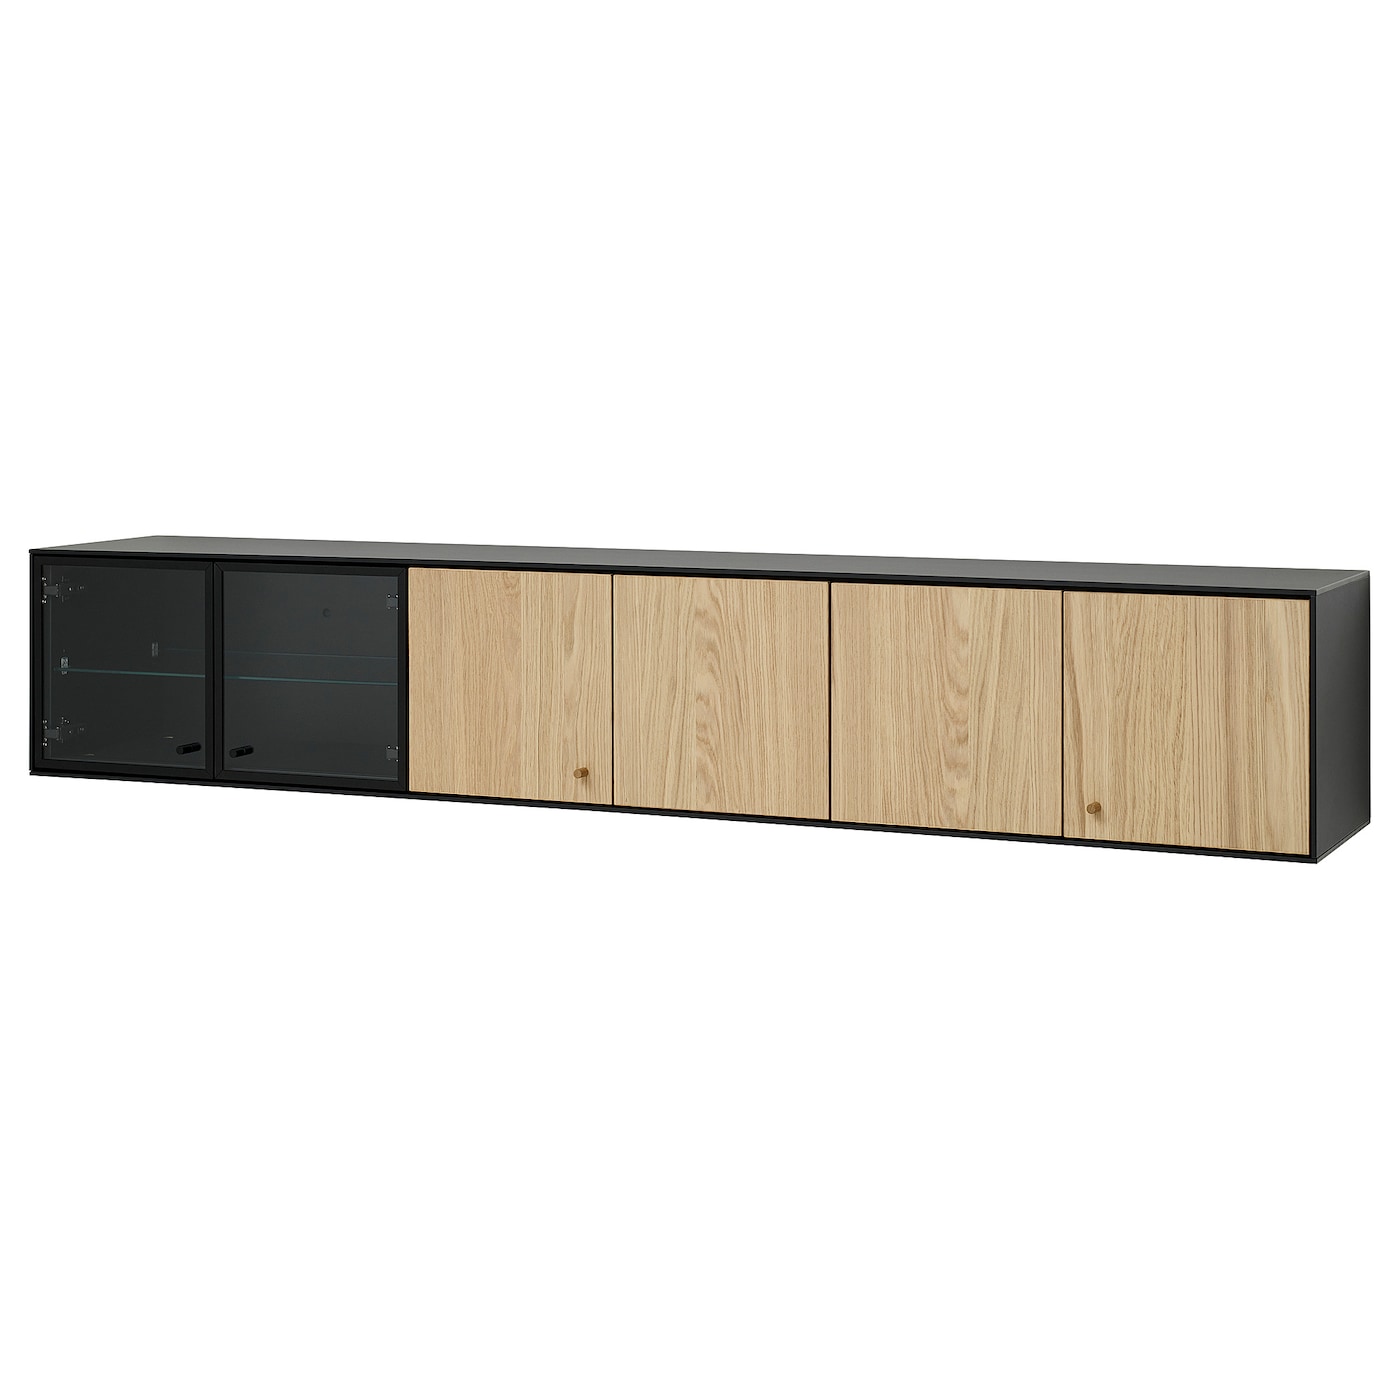 Полка настенная - IKEA BOASTAD/БОАСТАД ИКЕА, 181х32х32 см, черный/бежевый